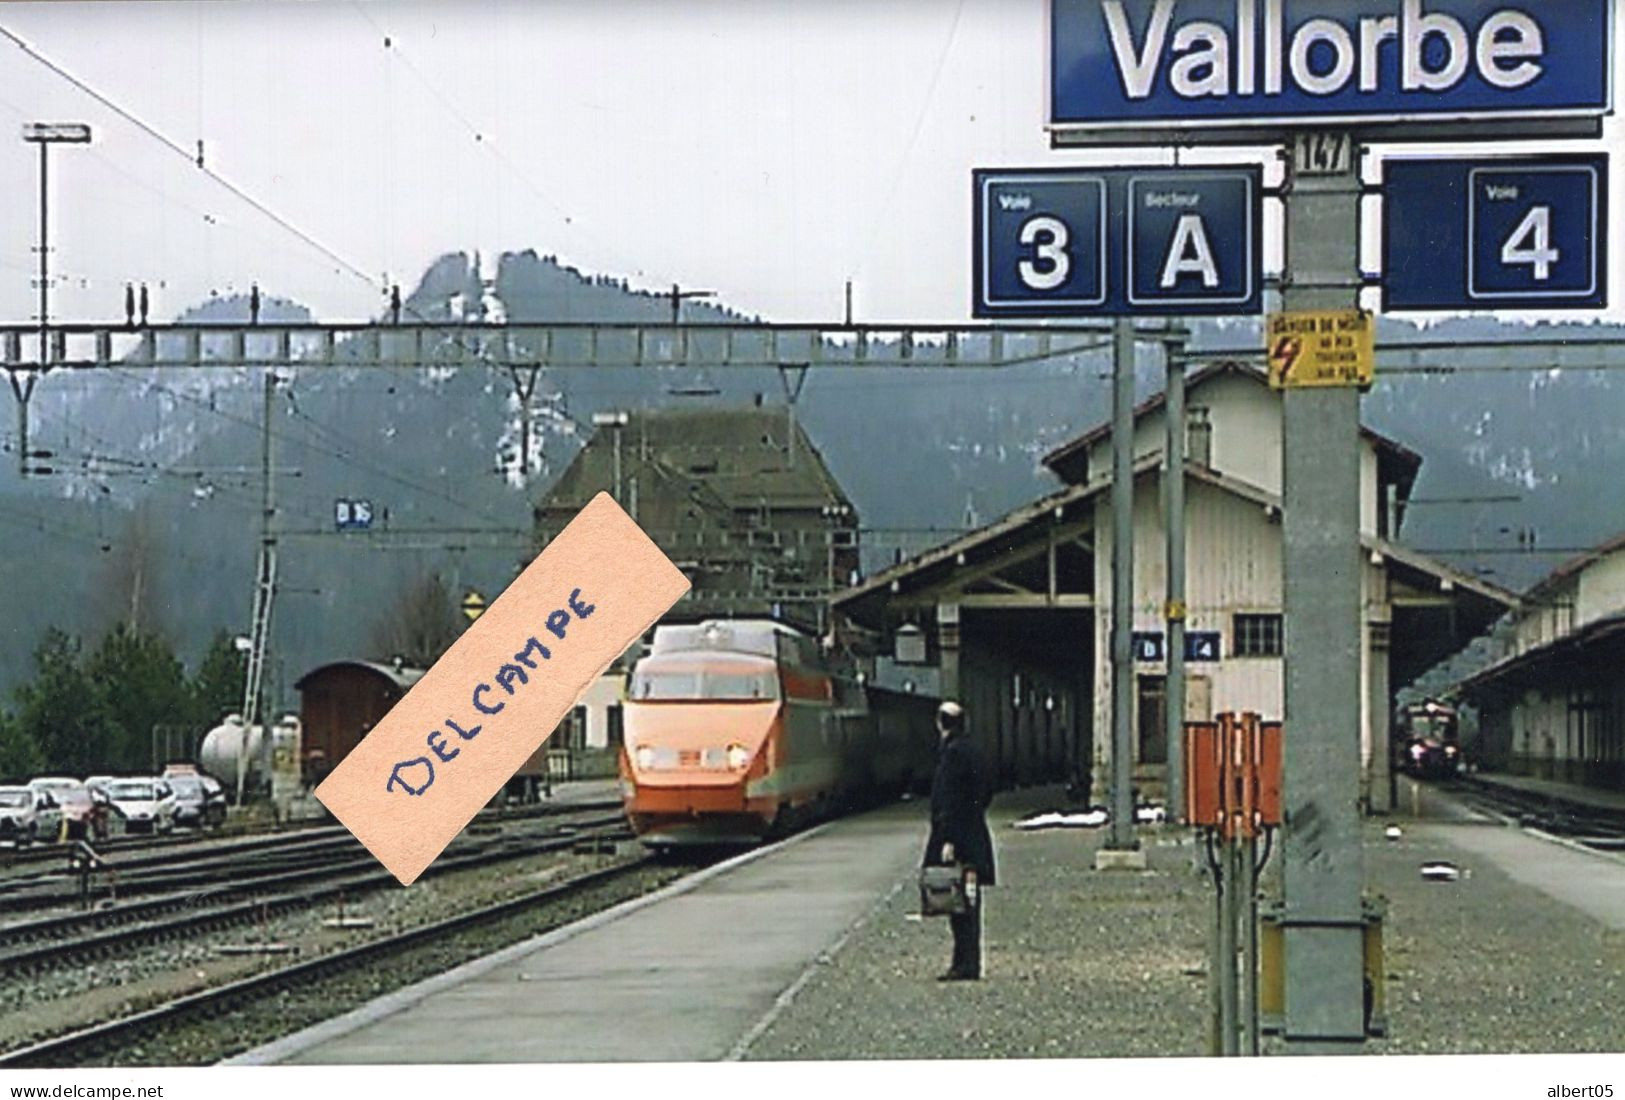 Ligne Paris-Lausanne - Le Conducteur Suisse Va Remplacer Son Collègue Français En Gare De Vallorbe - Reproduction - Vallorbe